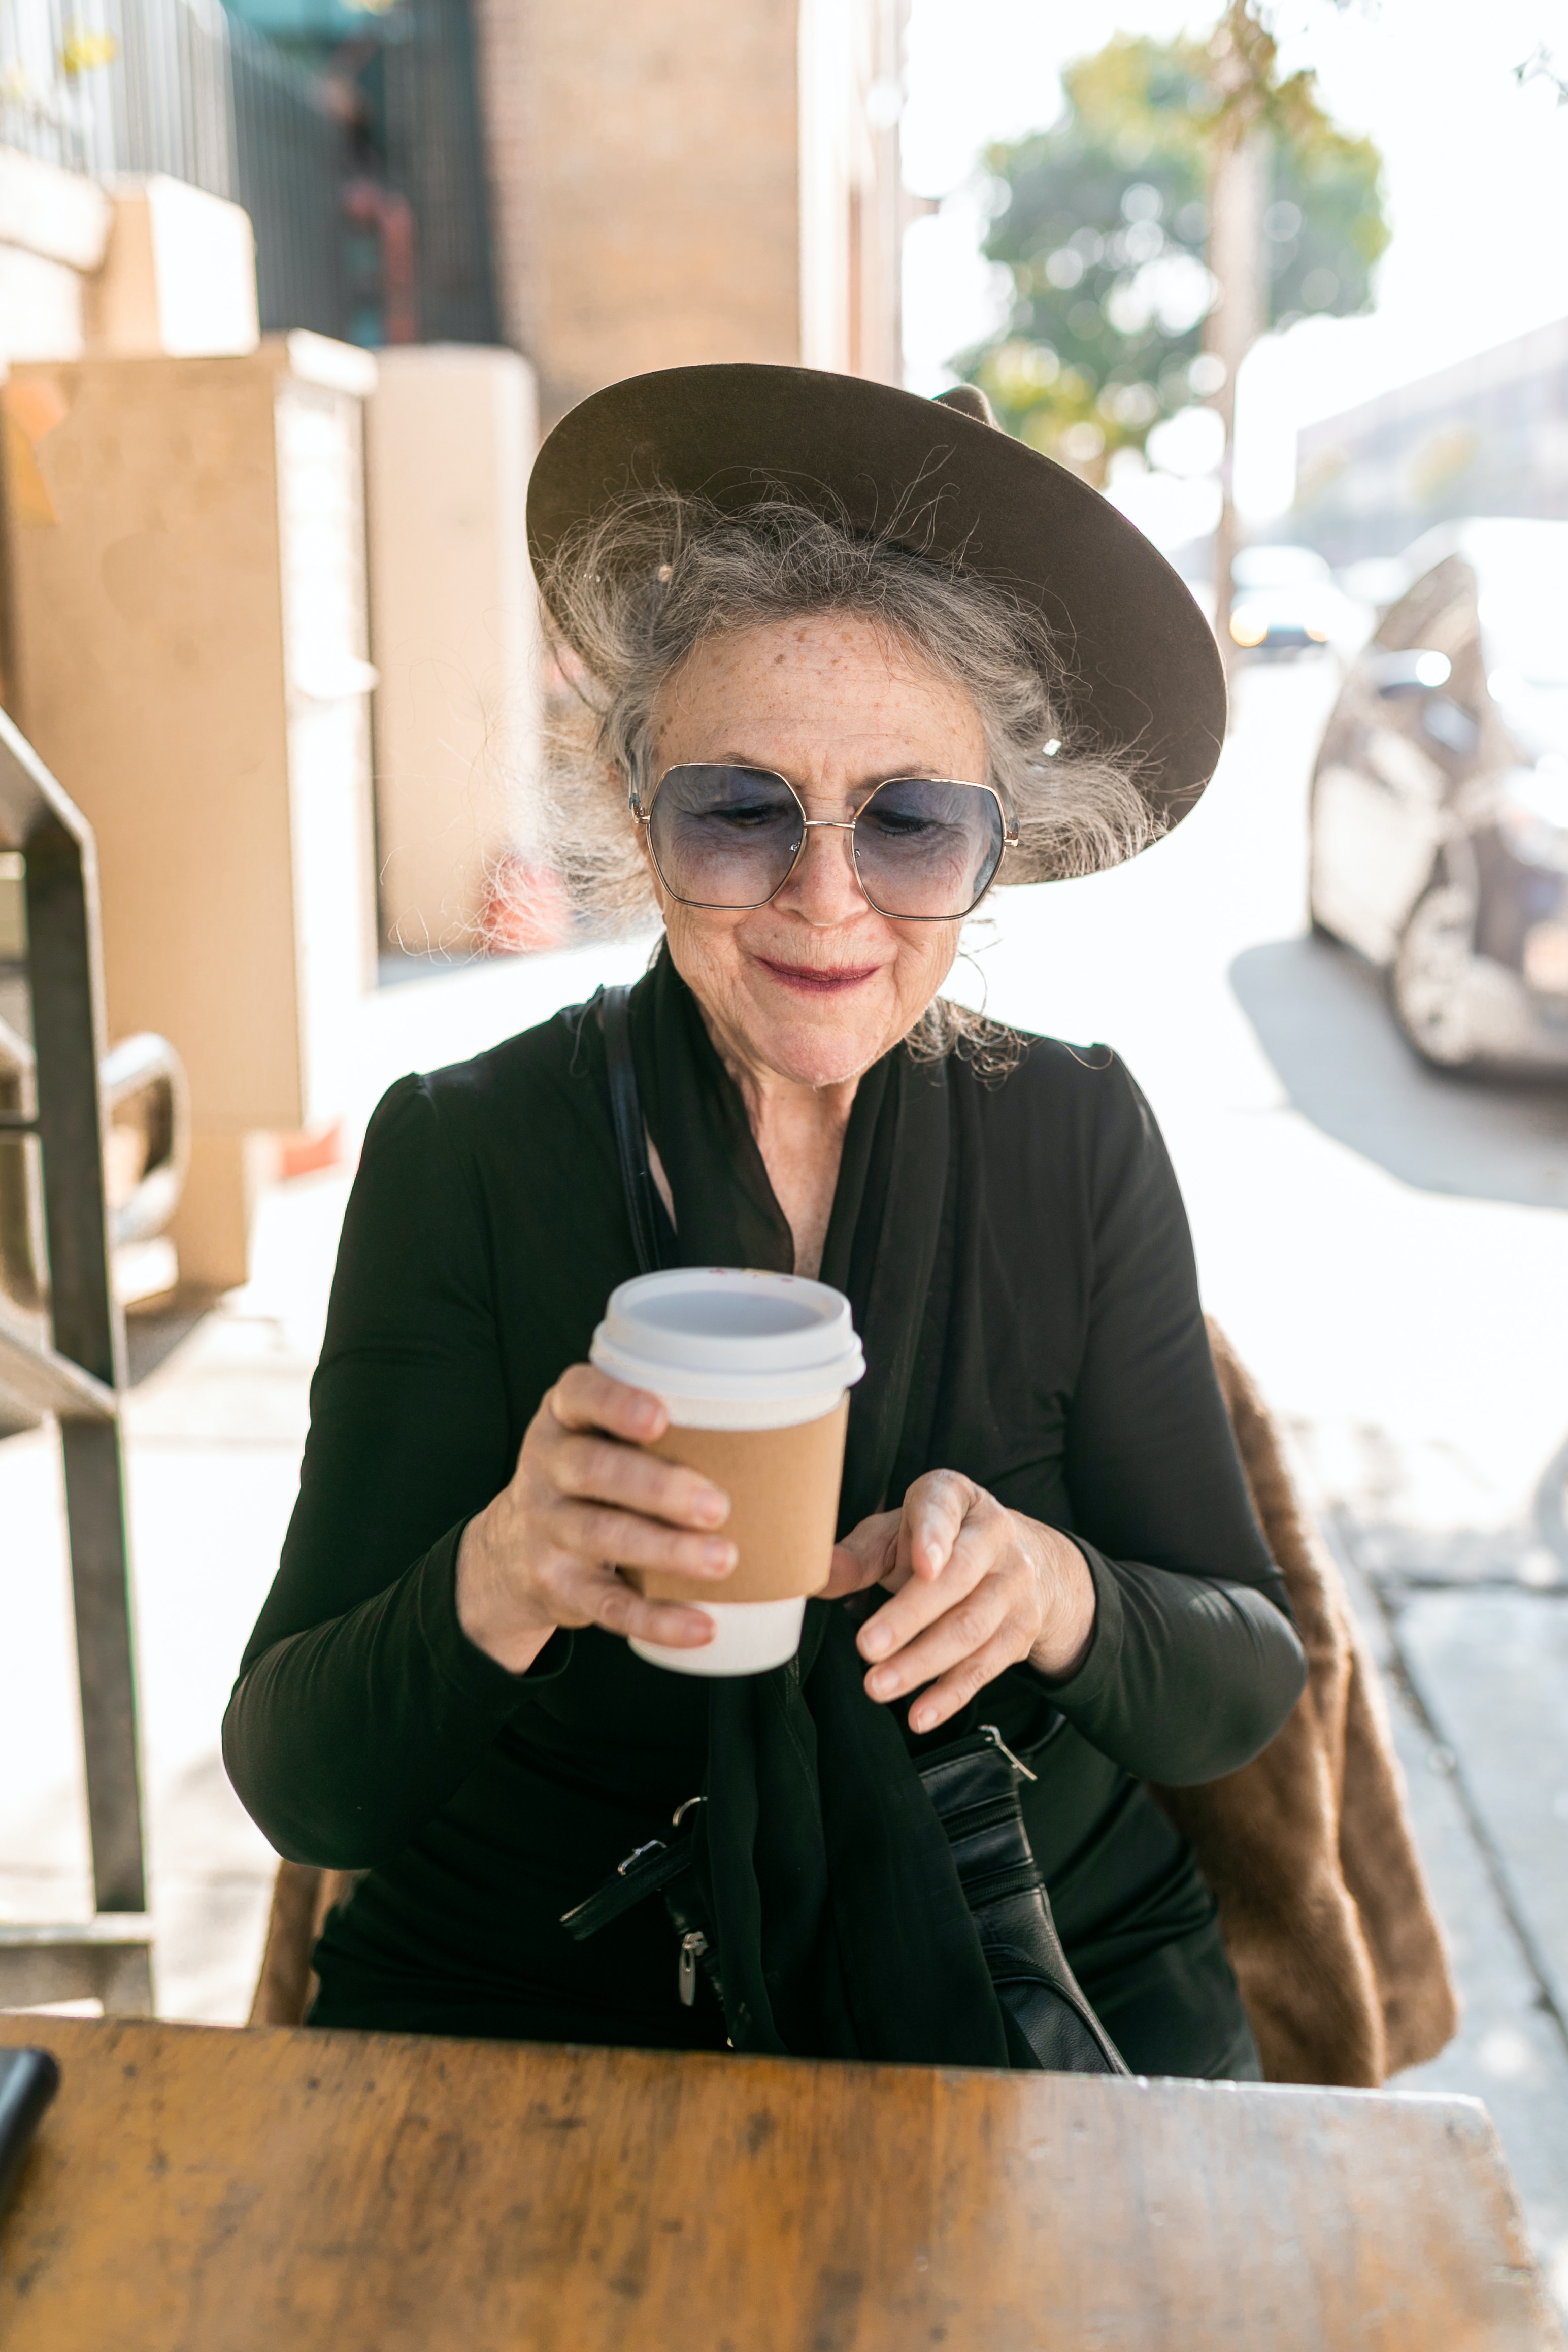 classy elderly woman in hat